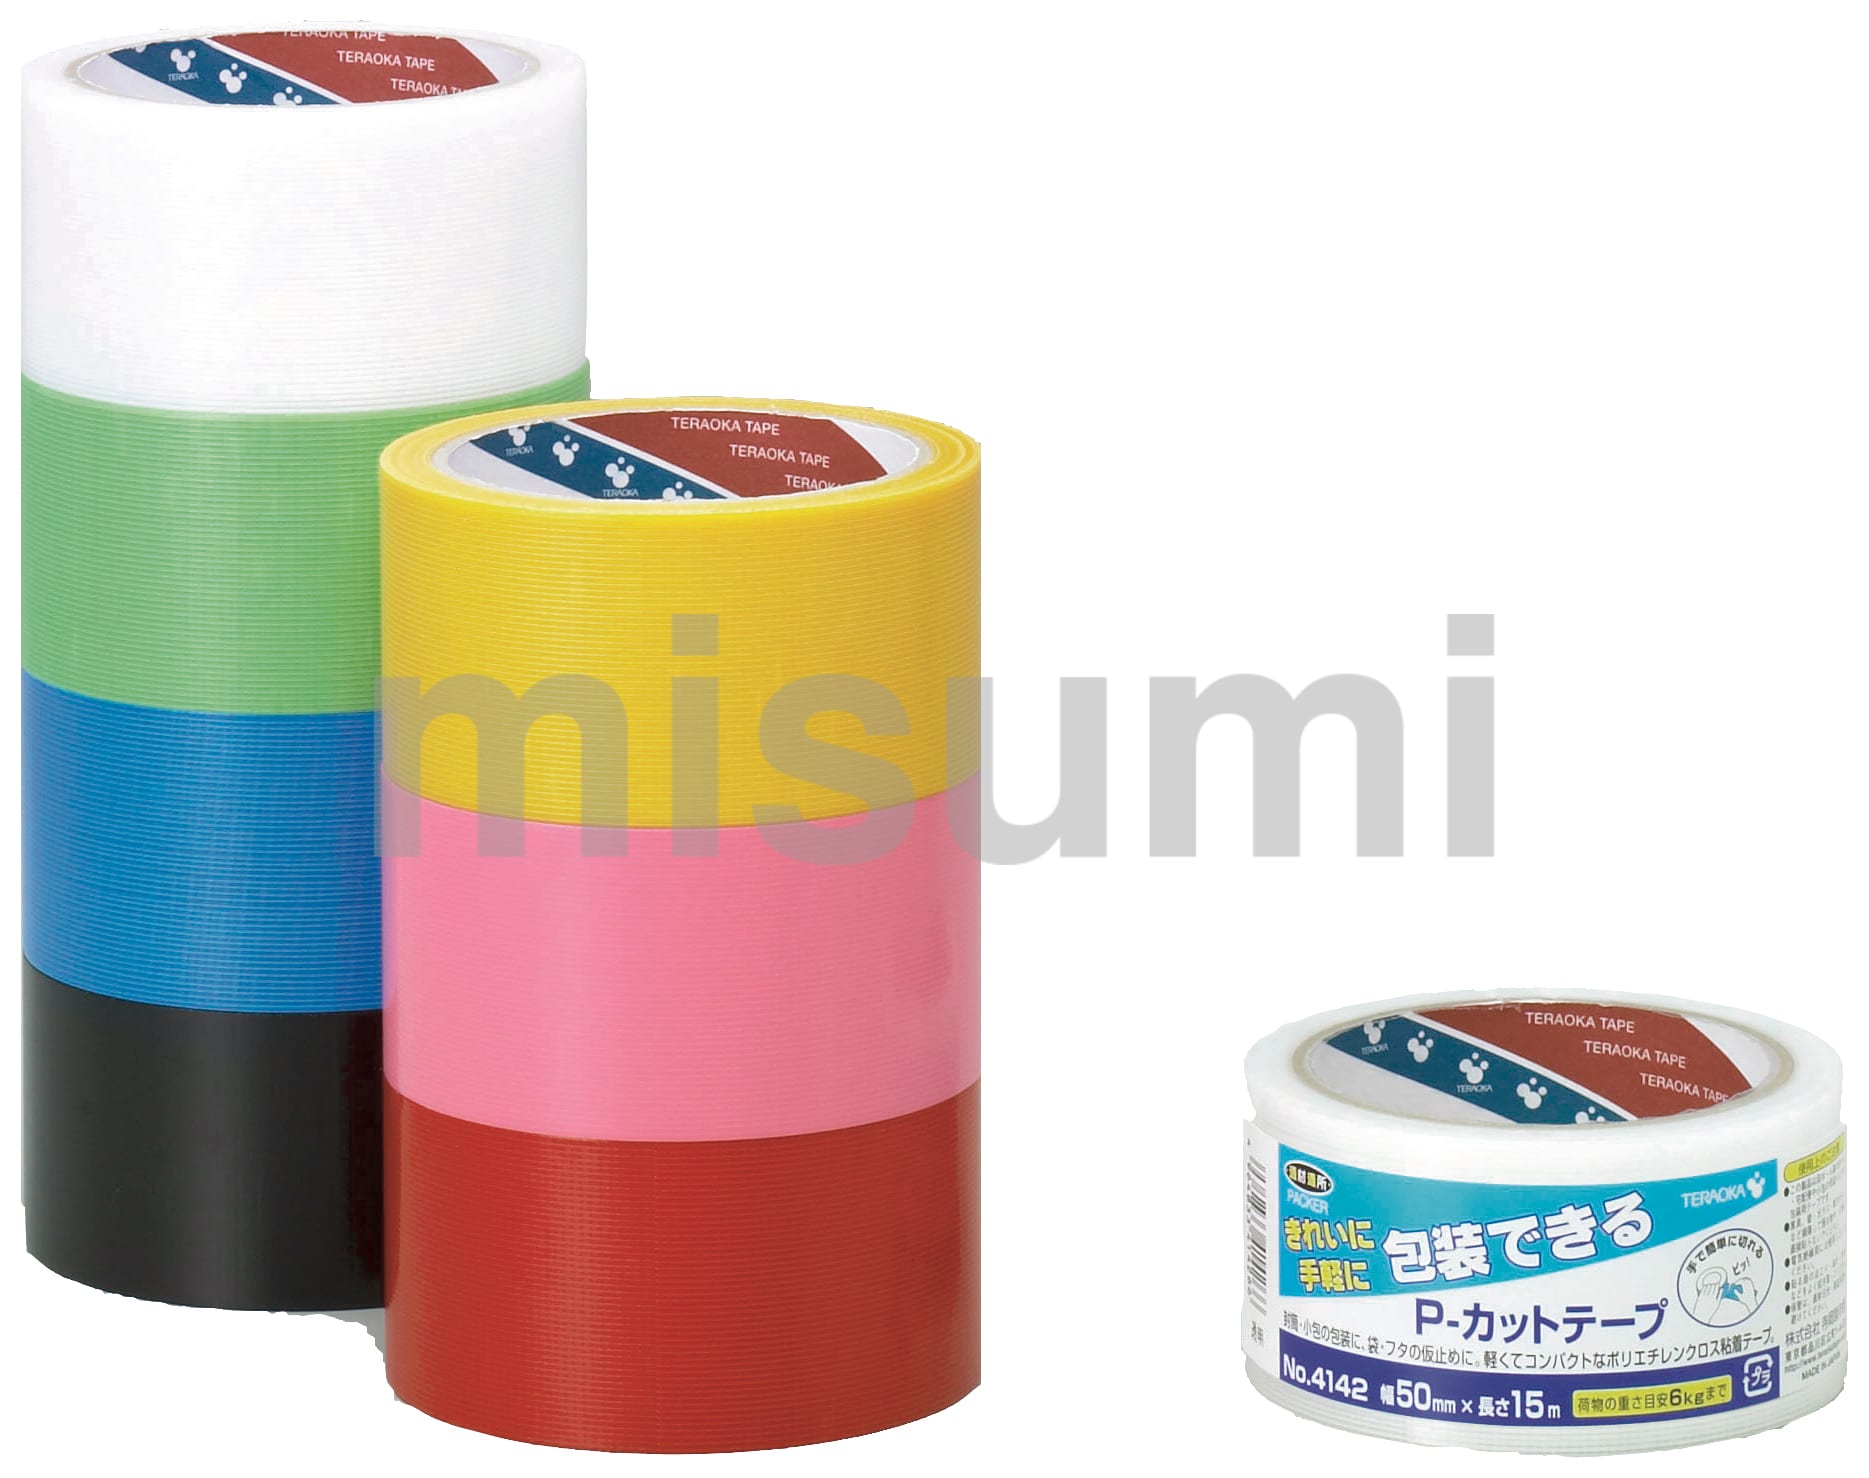 型番 ポリエチレンクロス粘着テープ 貼ってはがせる P-カットテープ No.4142 寺岡製作所 MISUMI(ミスミ)